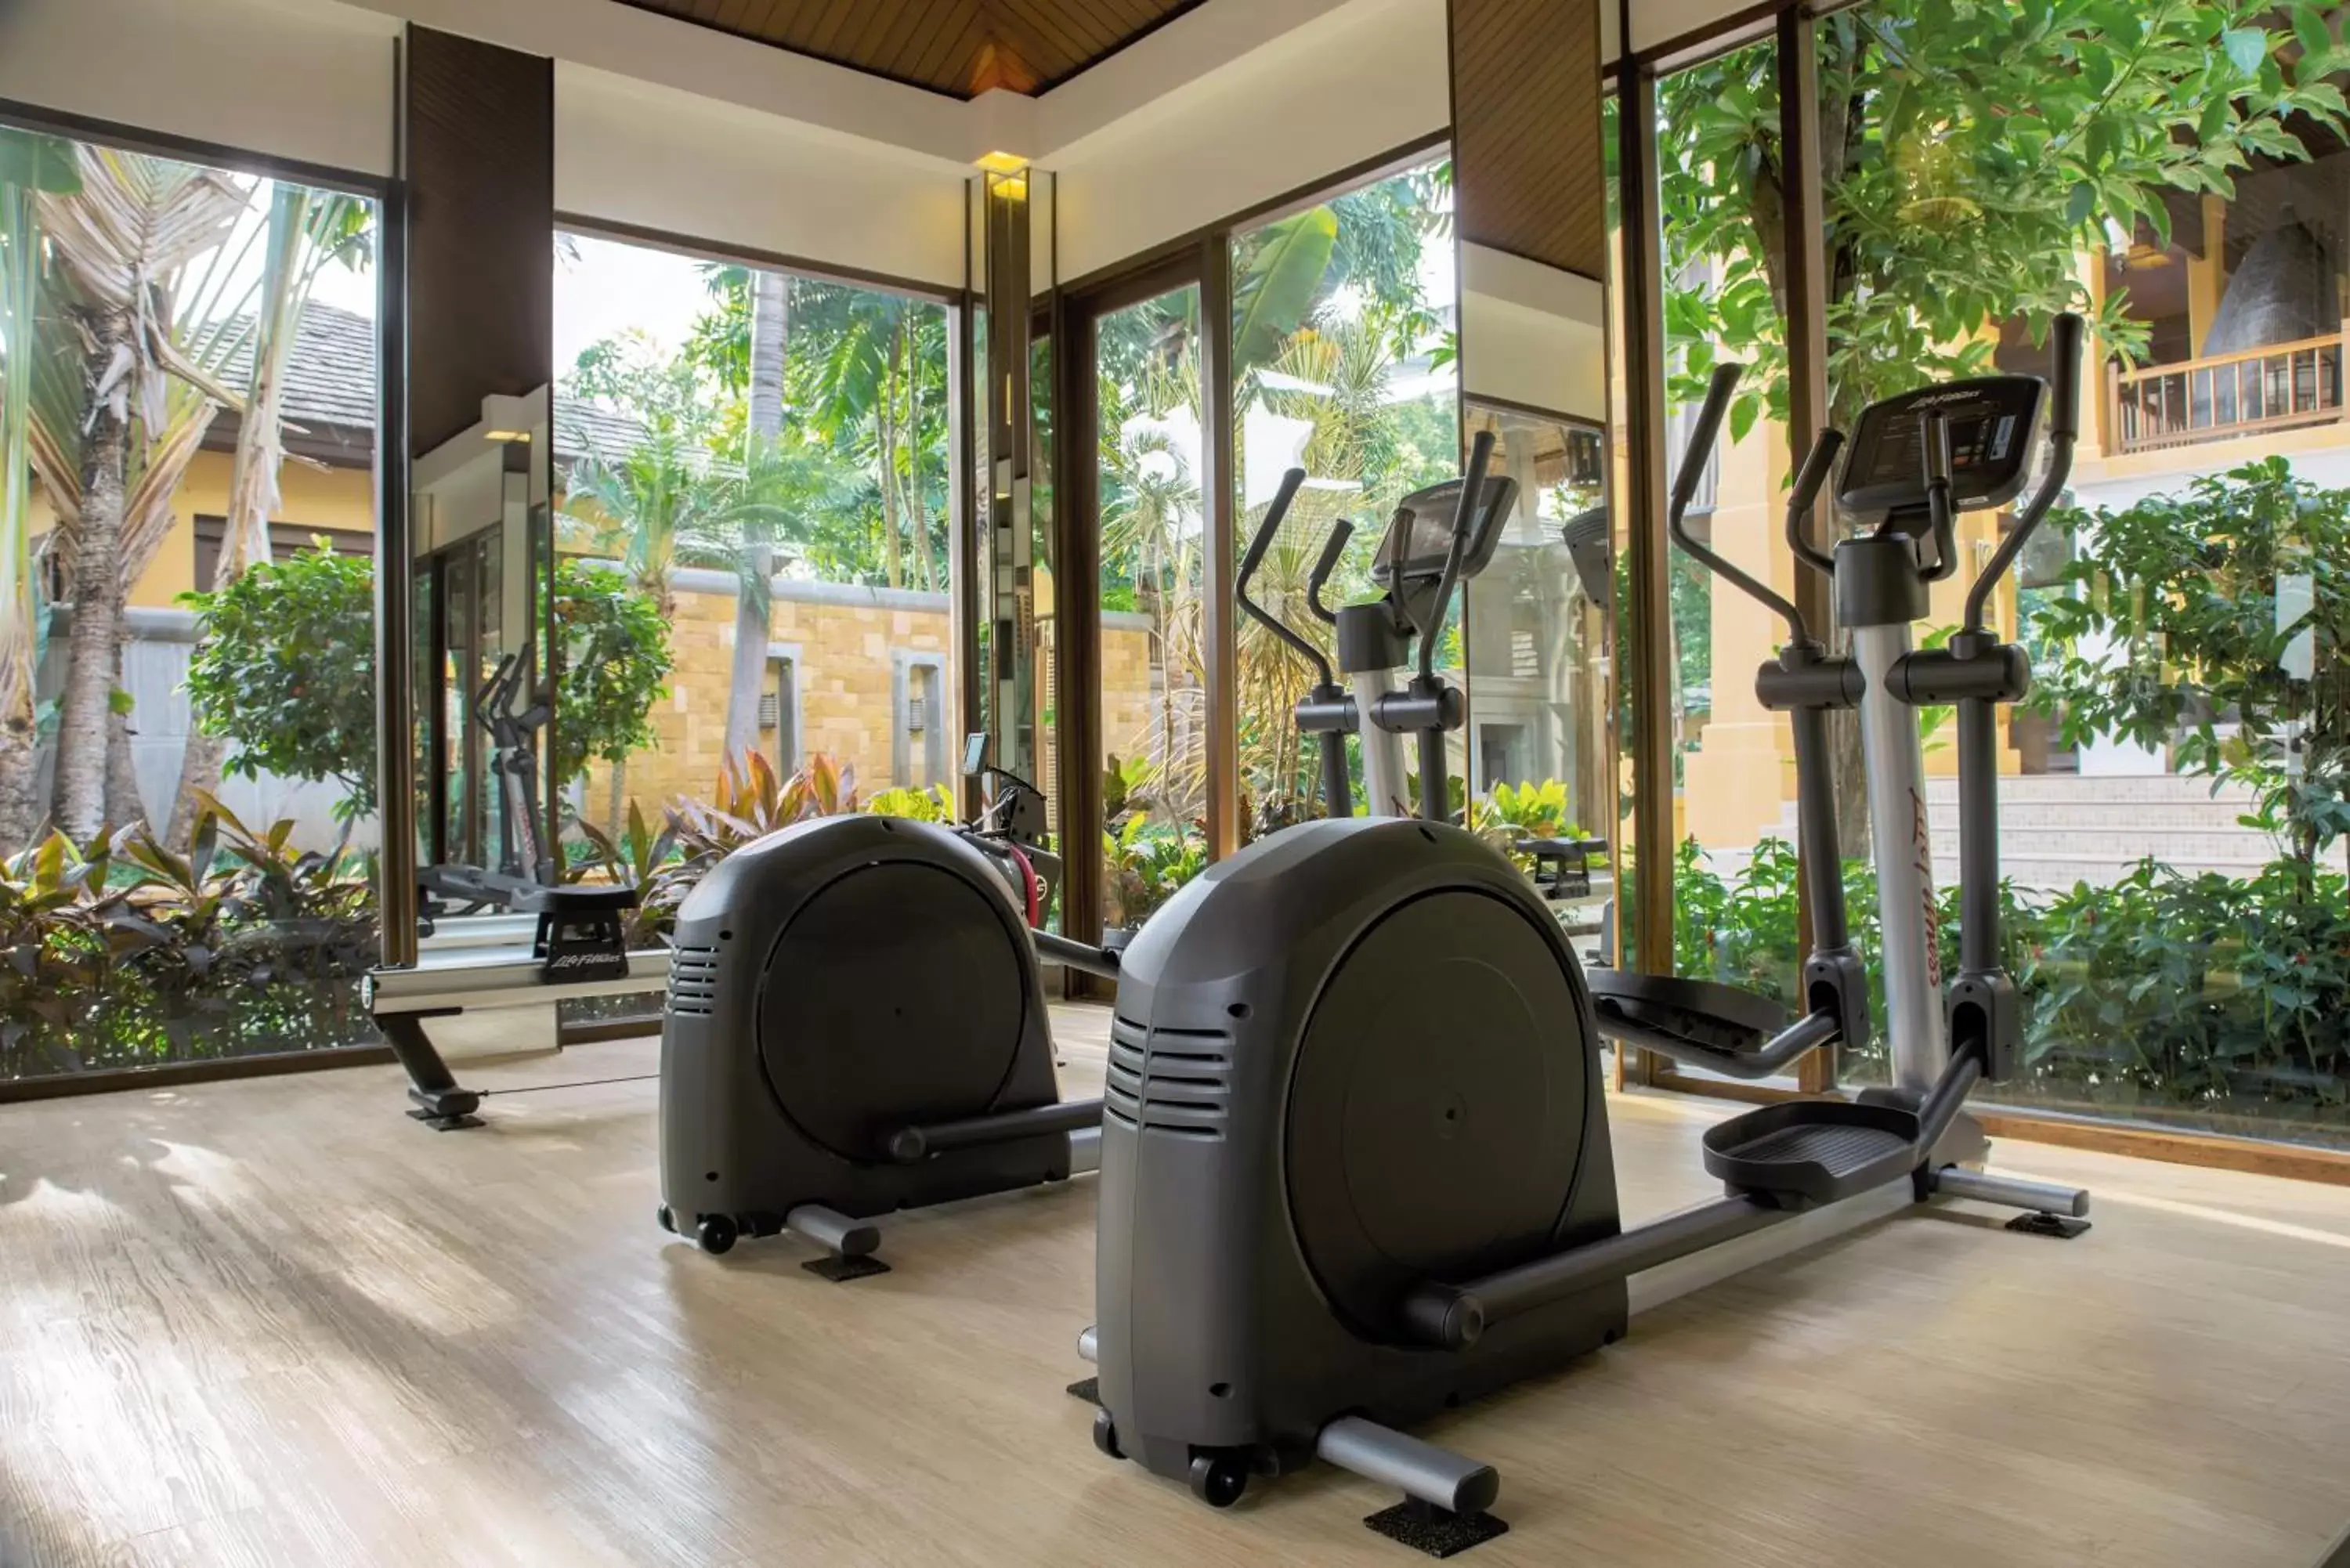 Fitness centre/facilities, Fitness Center/Facilities in Mövenpick Asara Resort & Spa Hua Hin